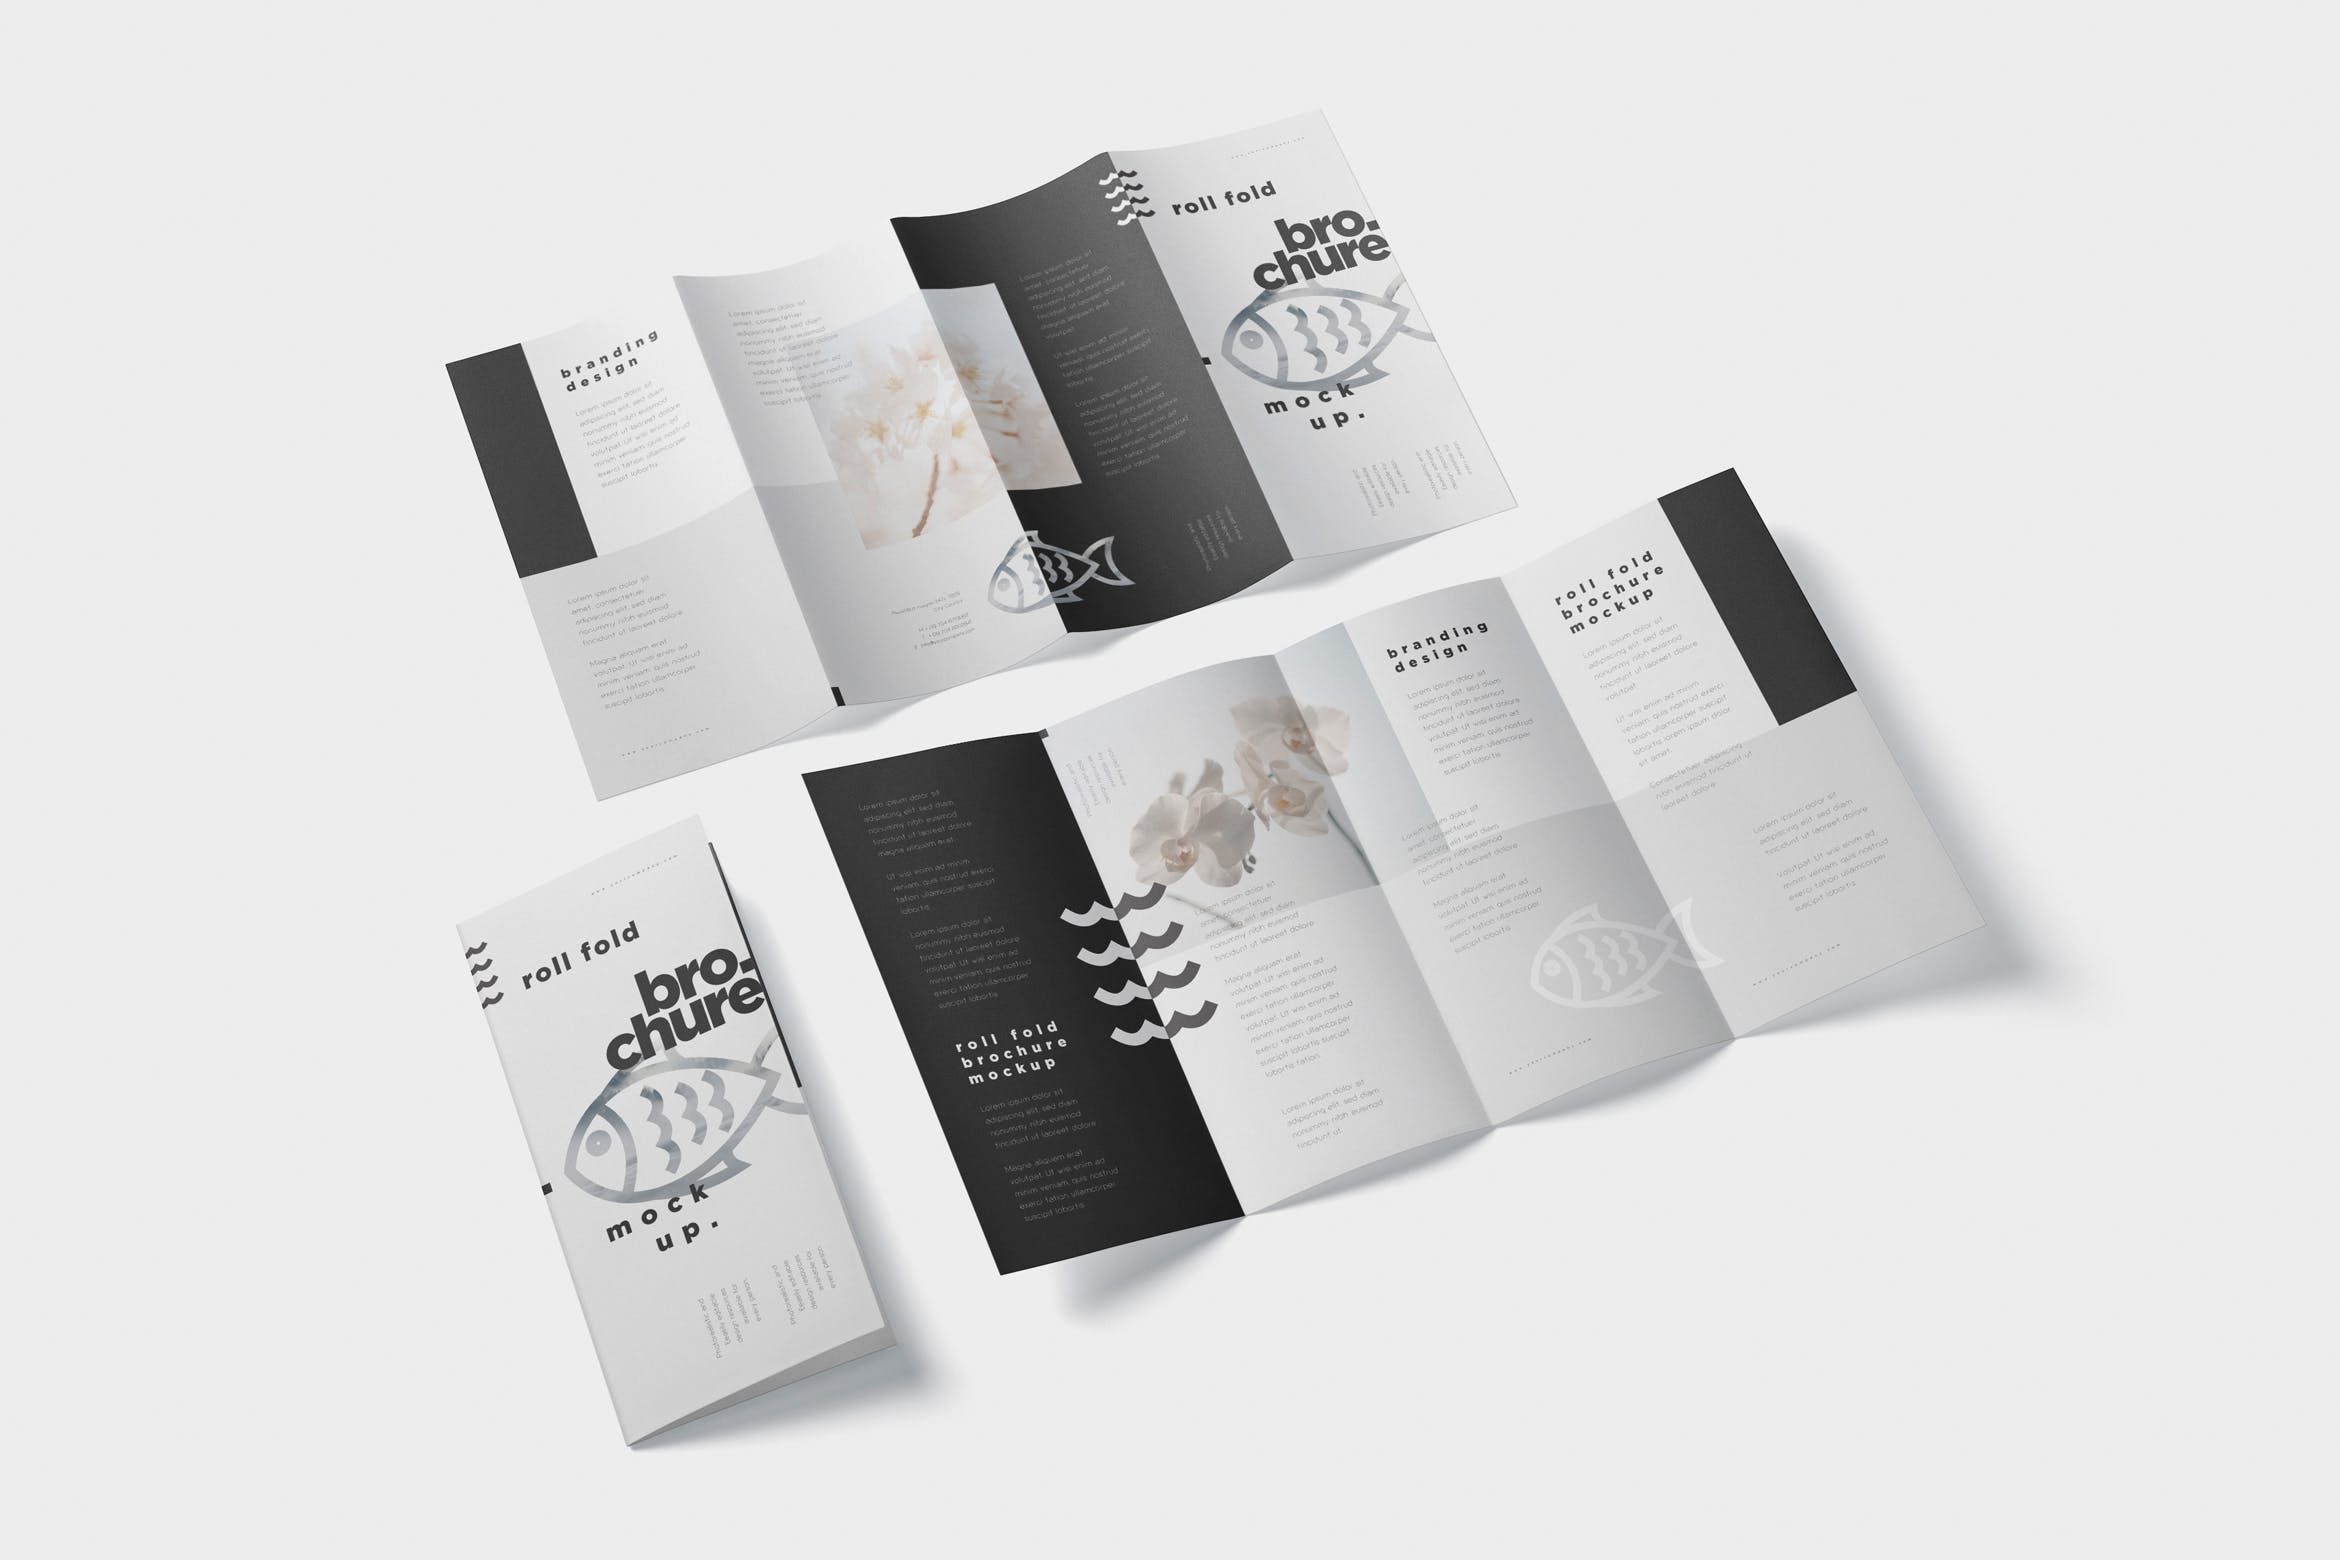 折叠设计风格企业传单/宣传册设计样机第一素材精选 Roll-Fold Brochure Mockup – DL DIN Lang Size插图